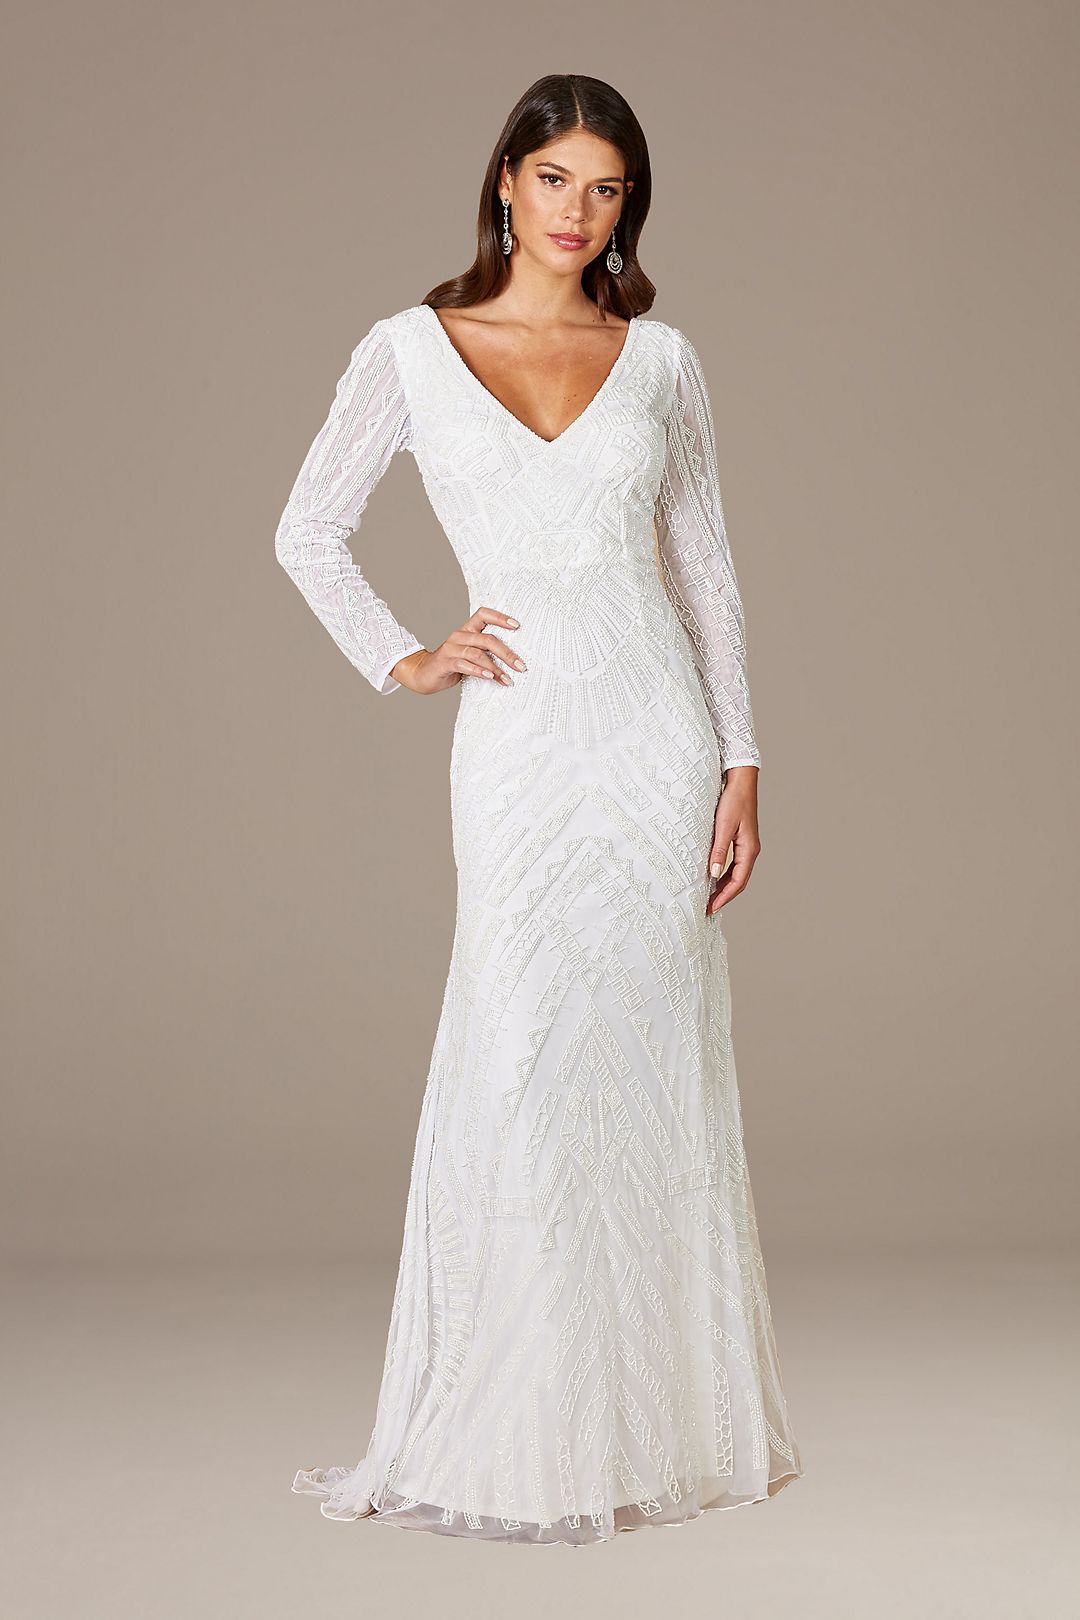 Lara Gretchen V-Neck Long Sleeve Wedding Dress Image 1